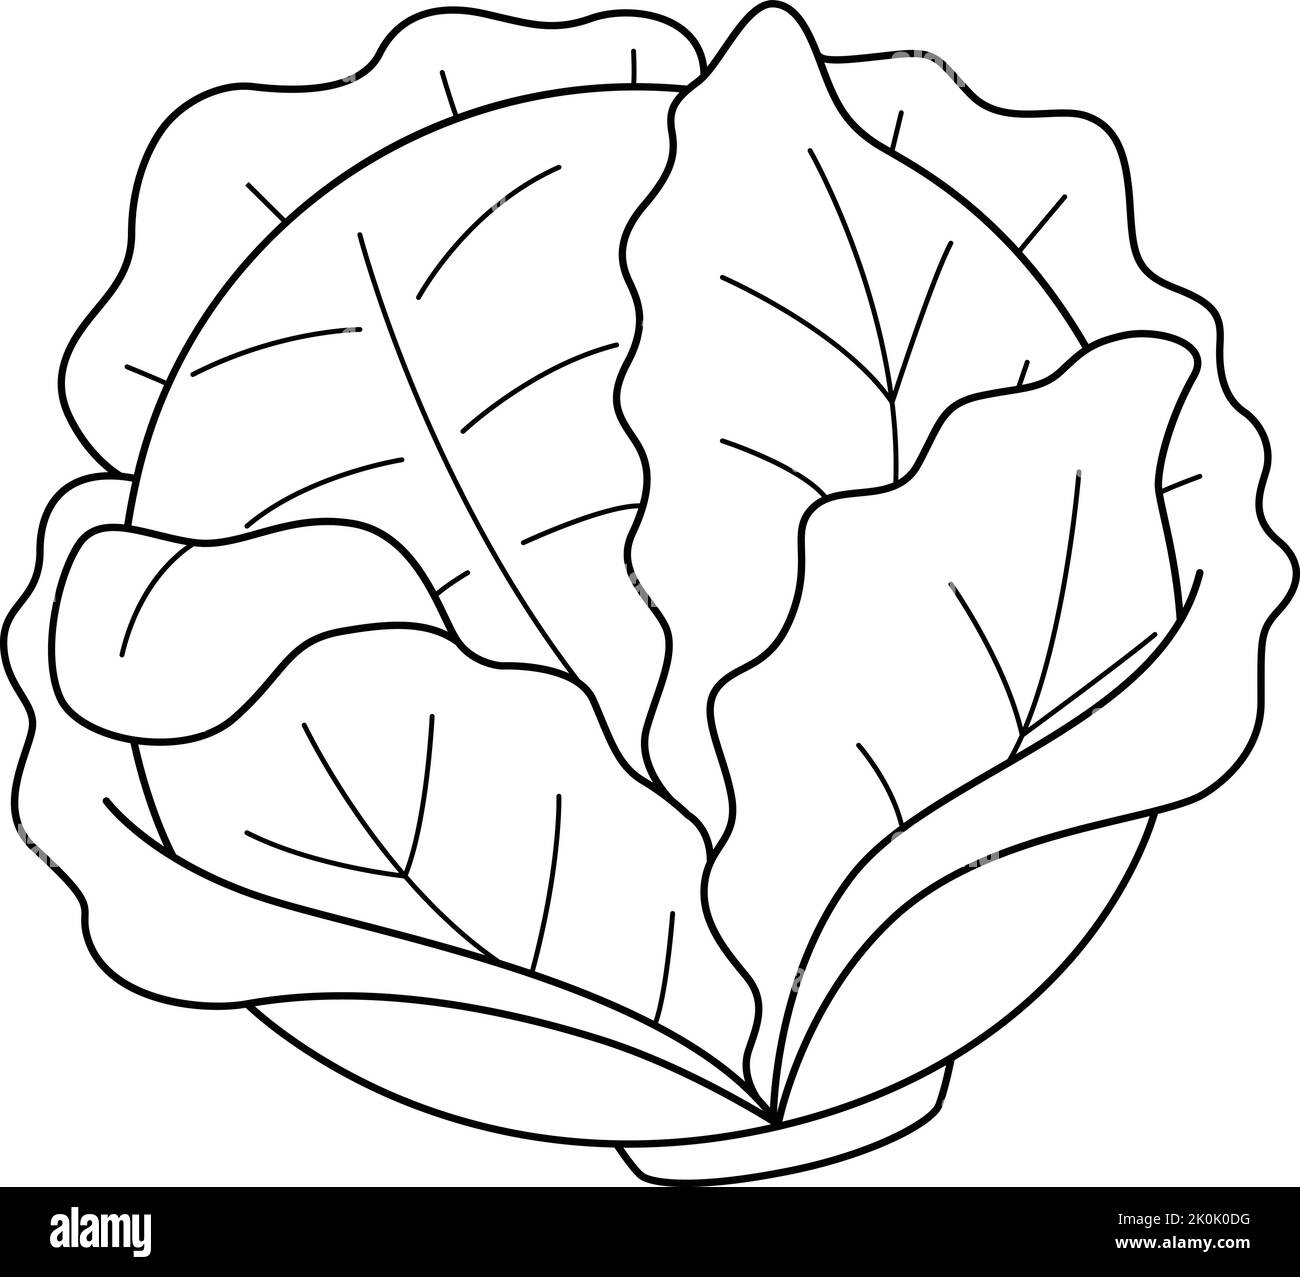 Page de coloriage isolé de légumes de chou pour les enfants Illustration de Vecteur